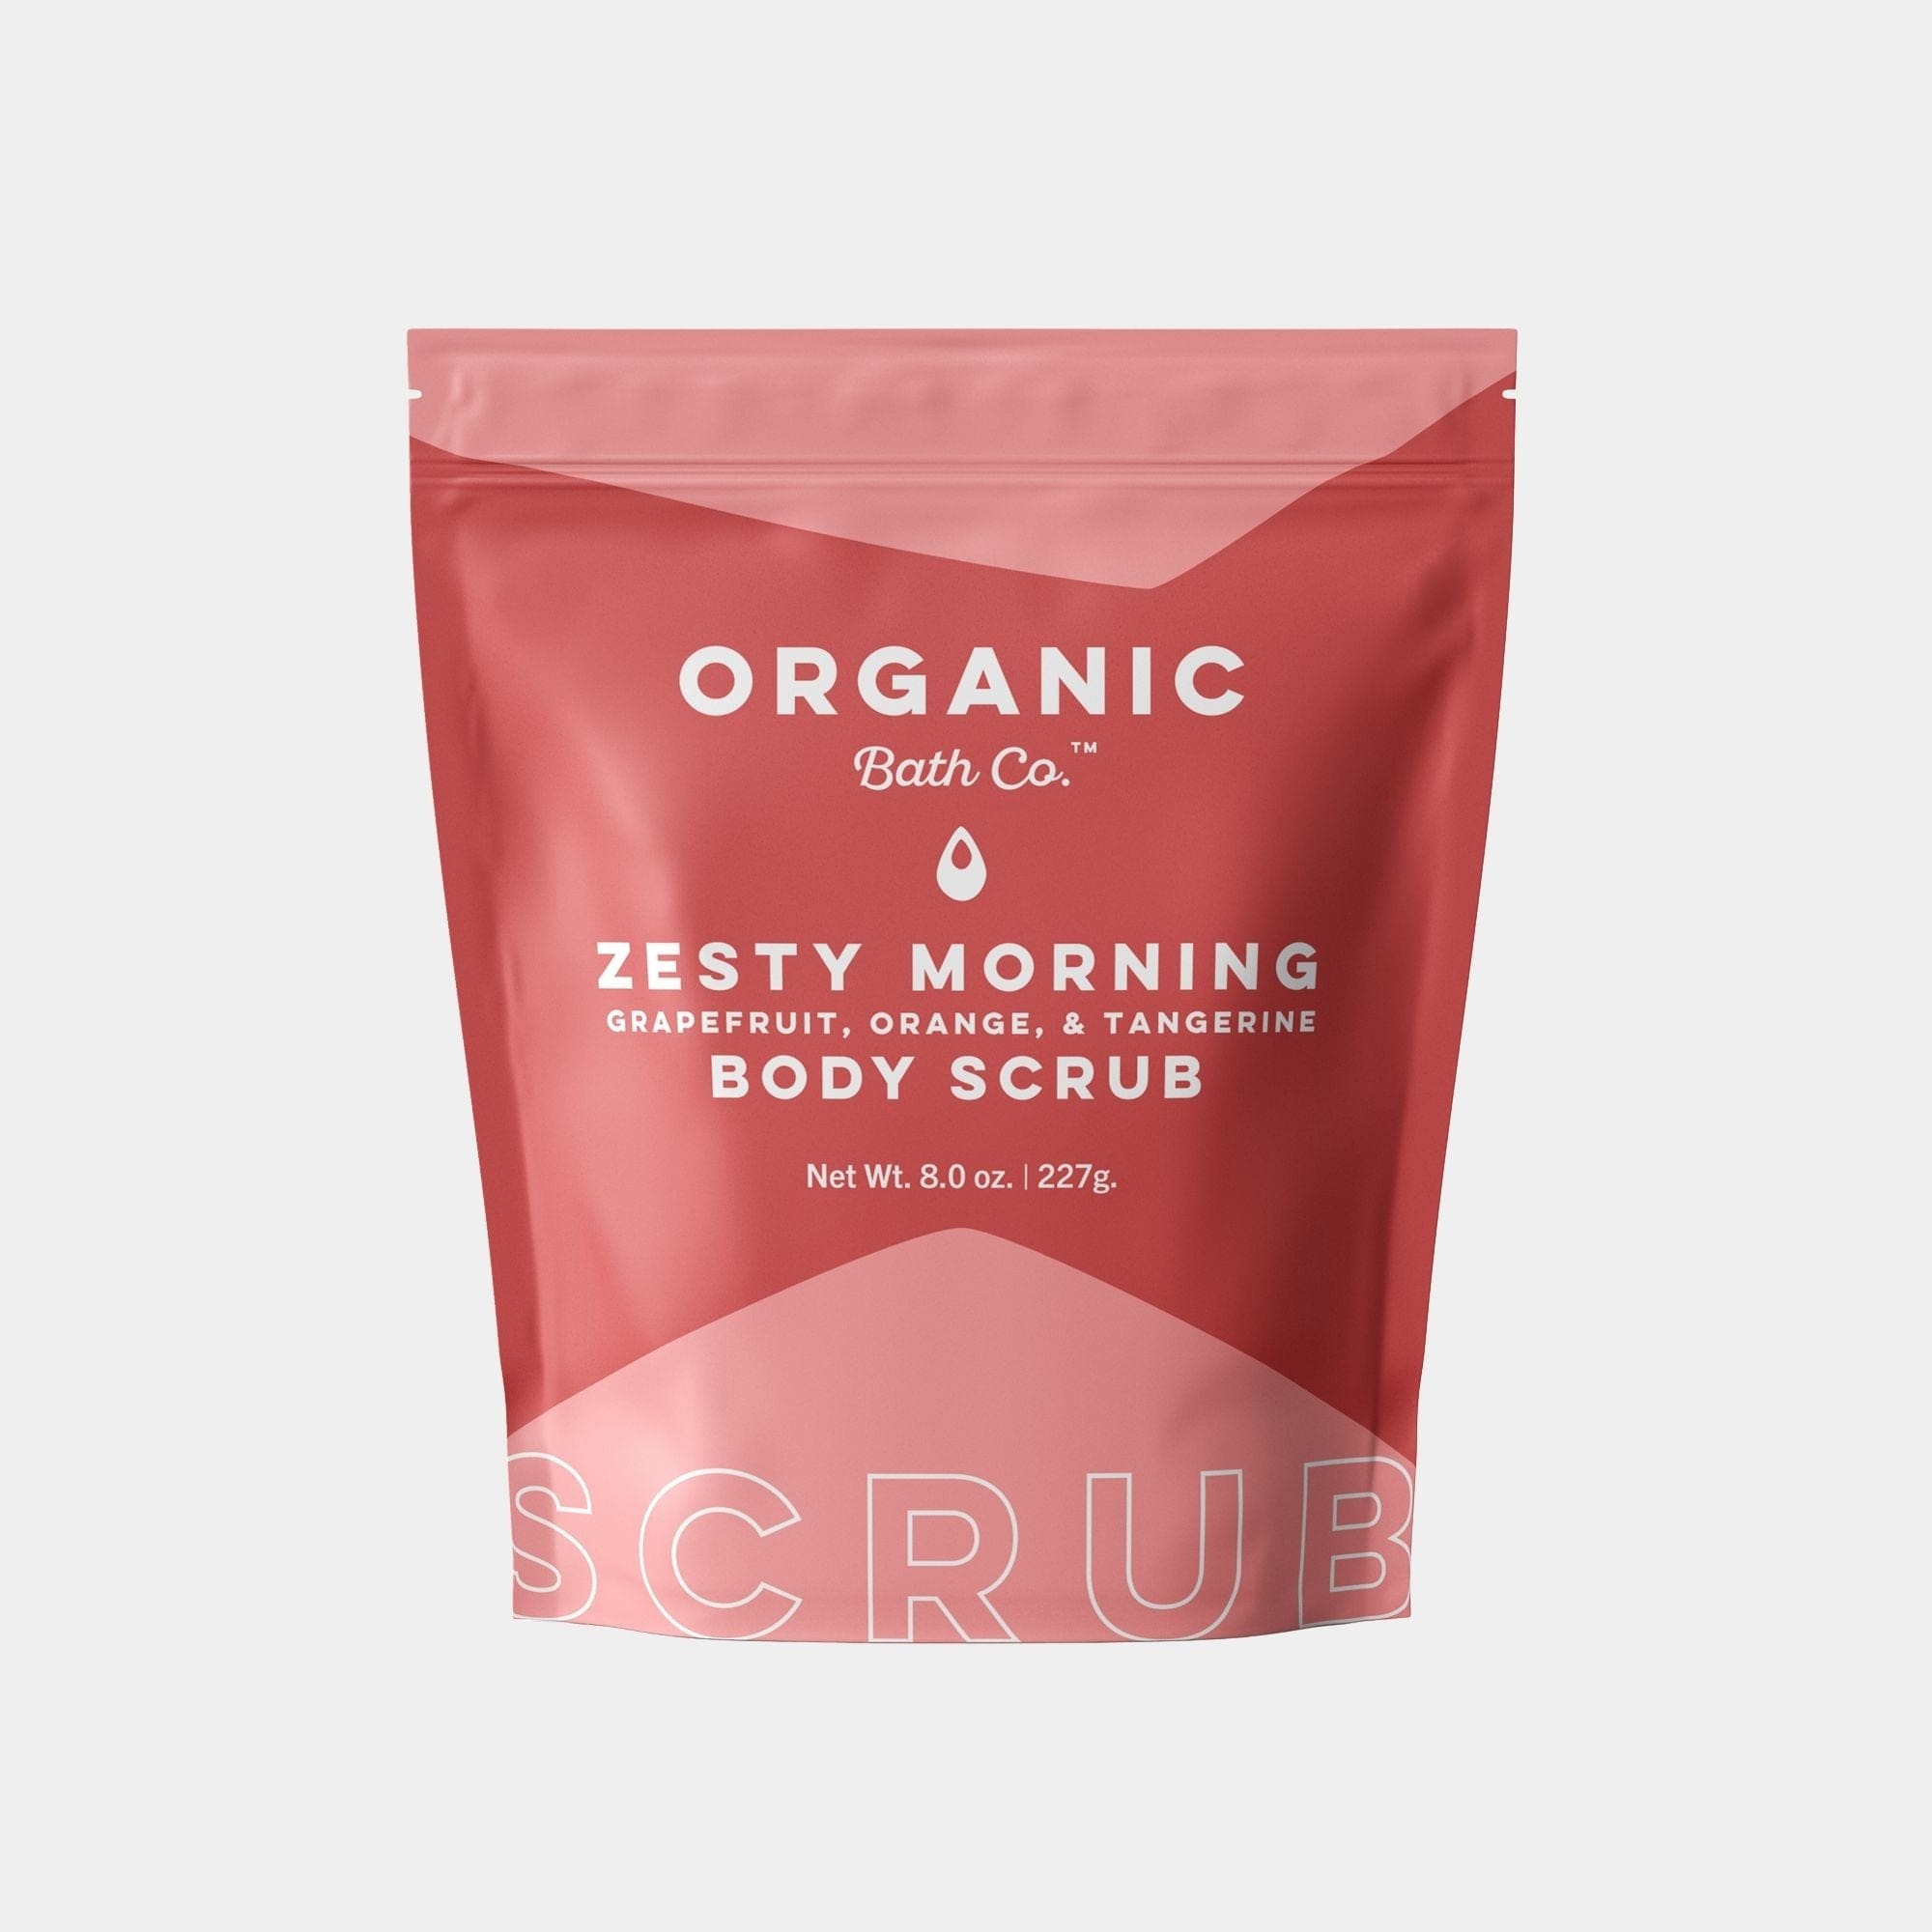 Zesty Morning Organic Body Scrub - Organic Bath Co.